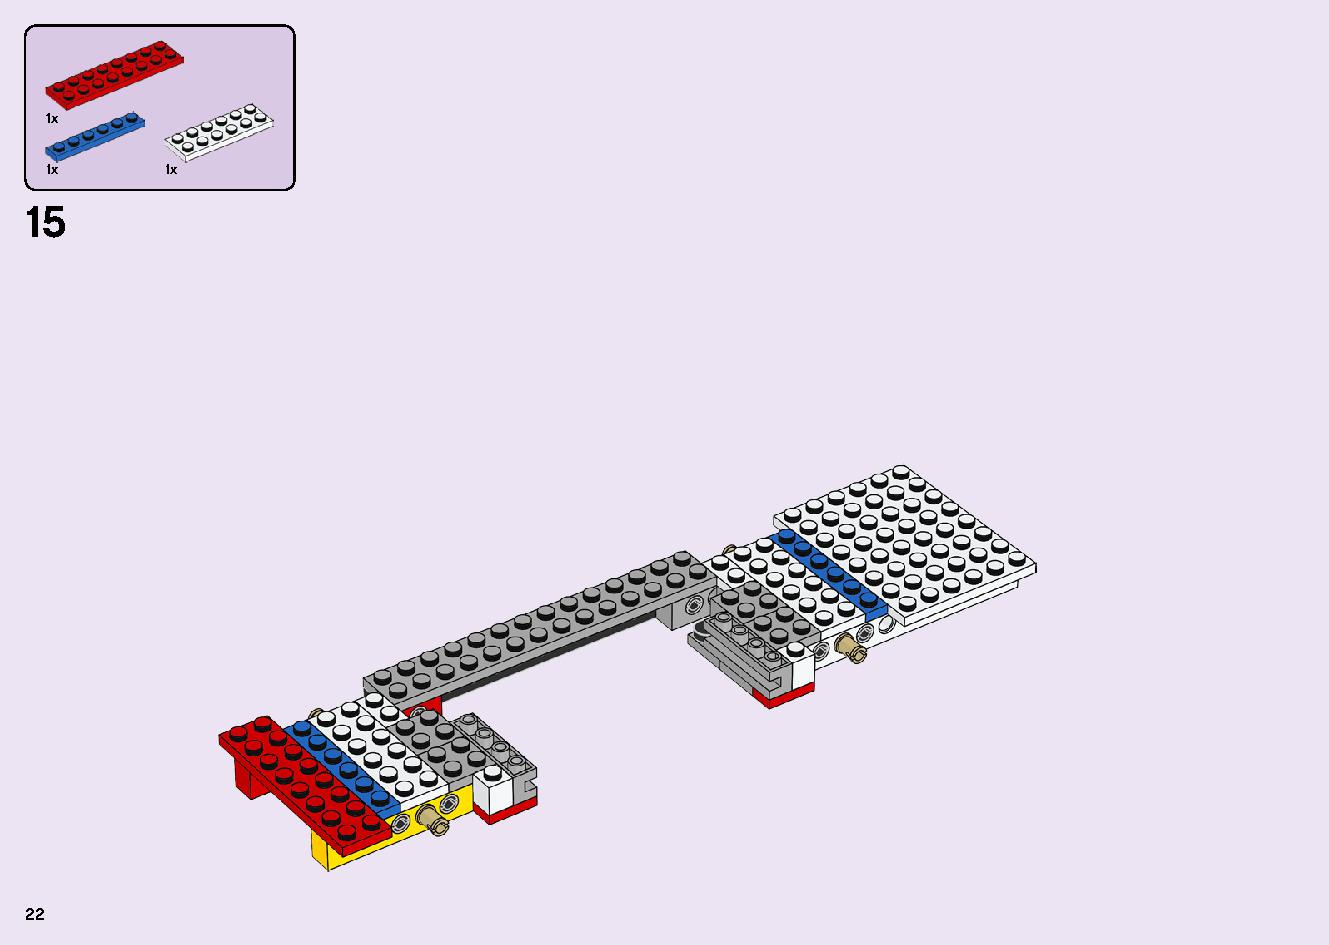 フレンズのうきうきハッピー・バス 41395 レゴの商品情報 レゴの説明書・組立方法 22 page